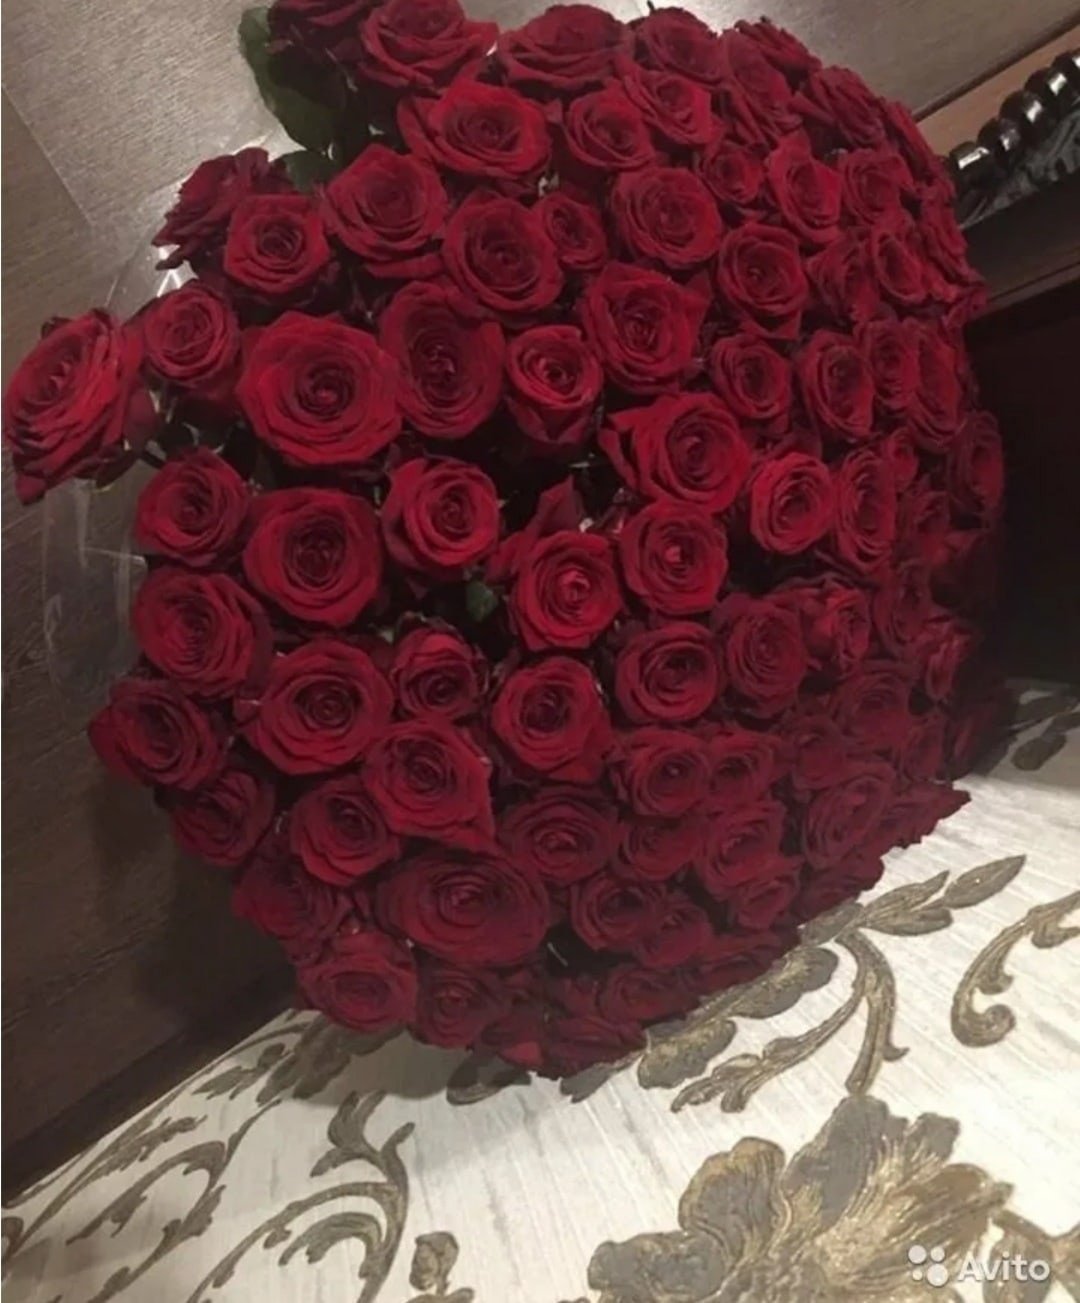 Сегодня мне подарили цветы. Большой букет роз. Большой букет красных роз. Огромный букет красных роз. Красивый букет дома.